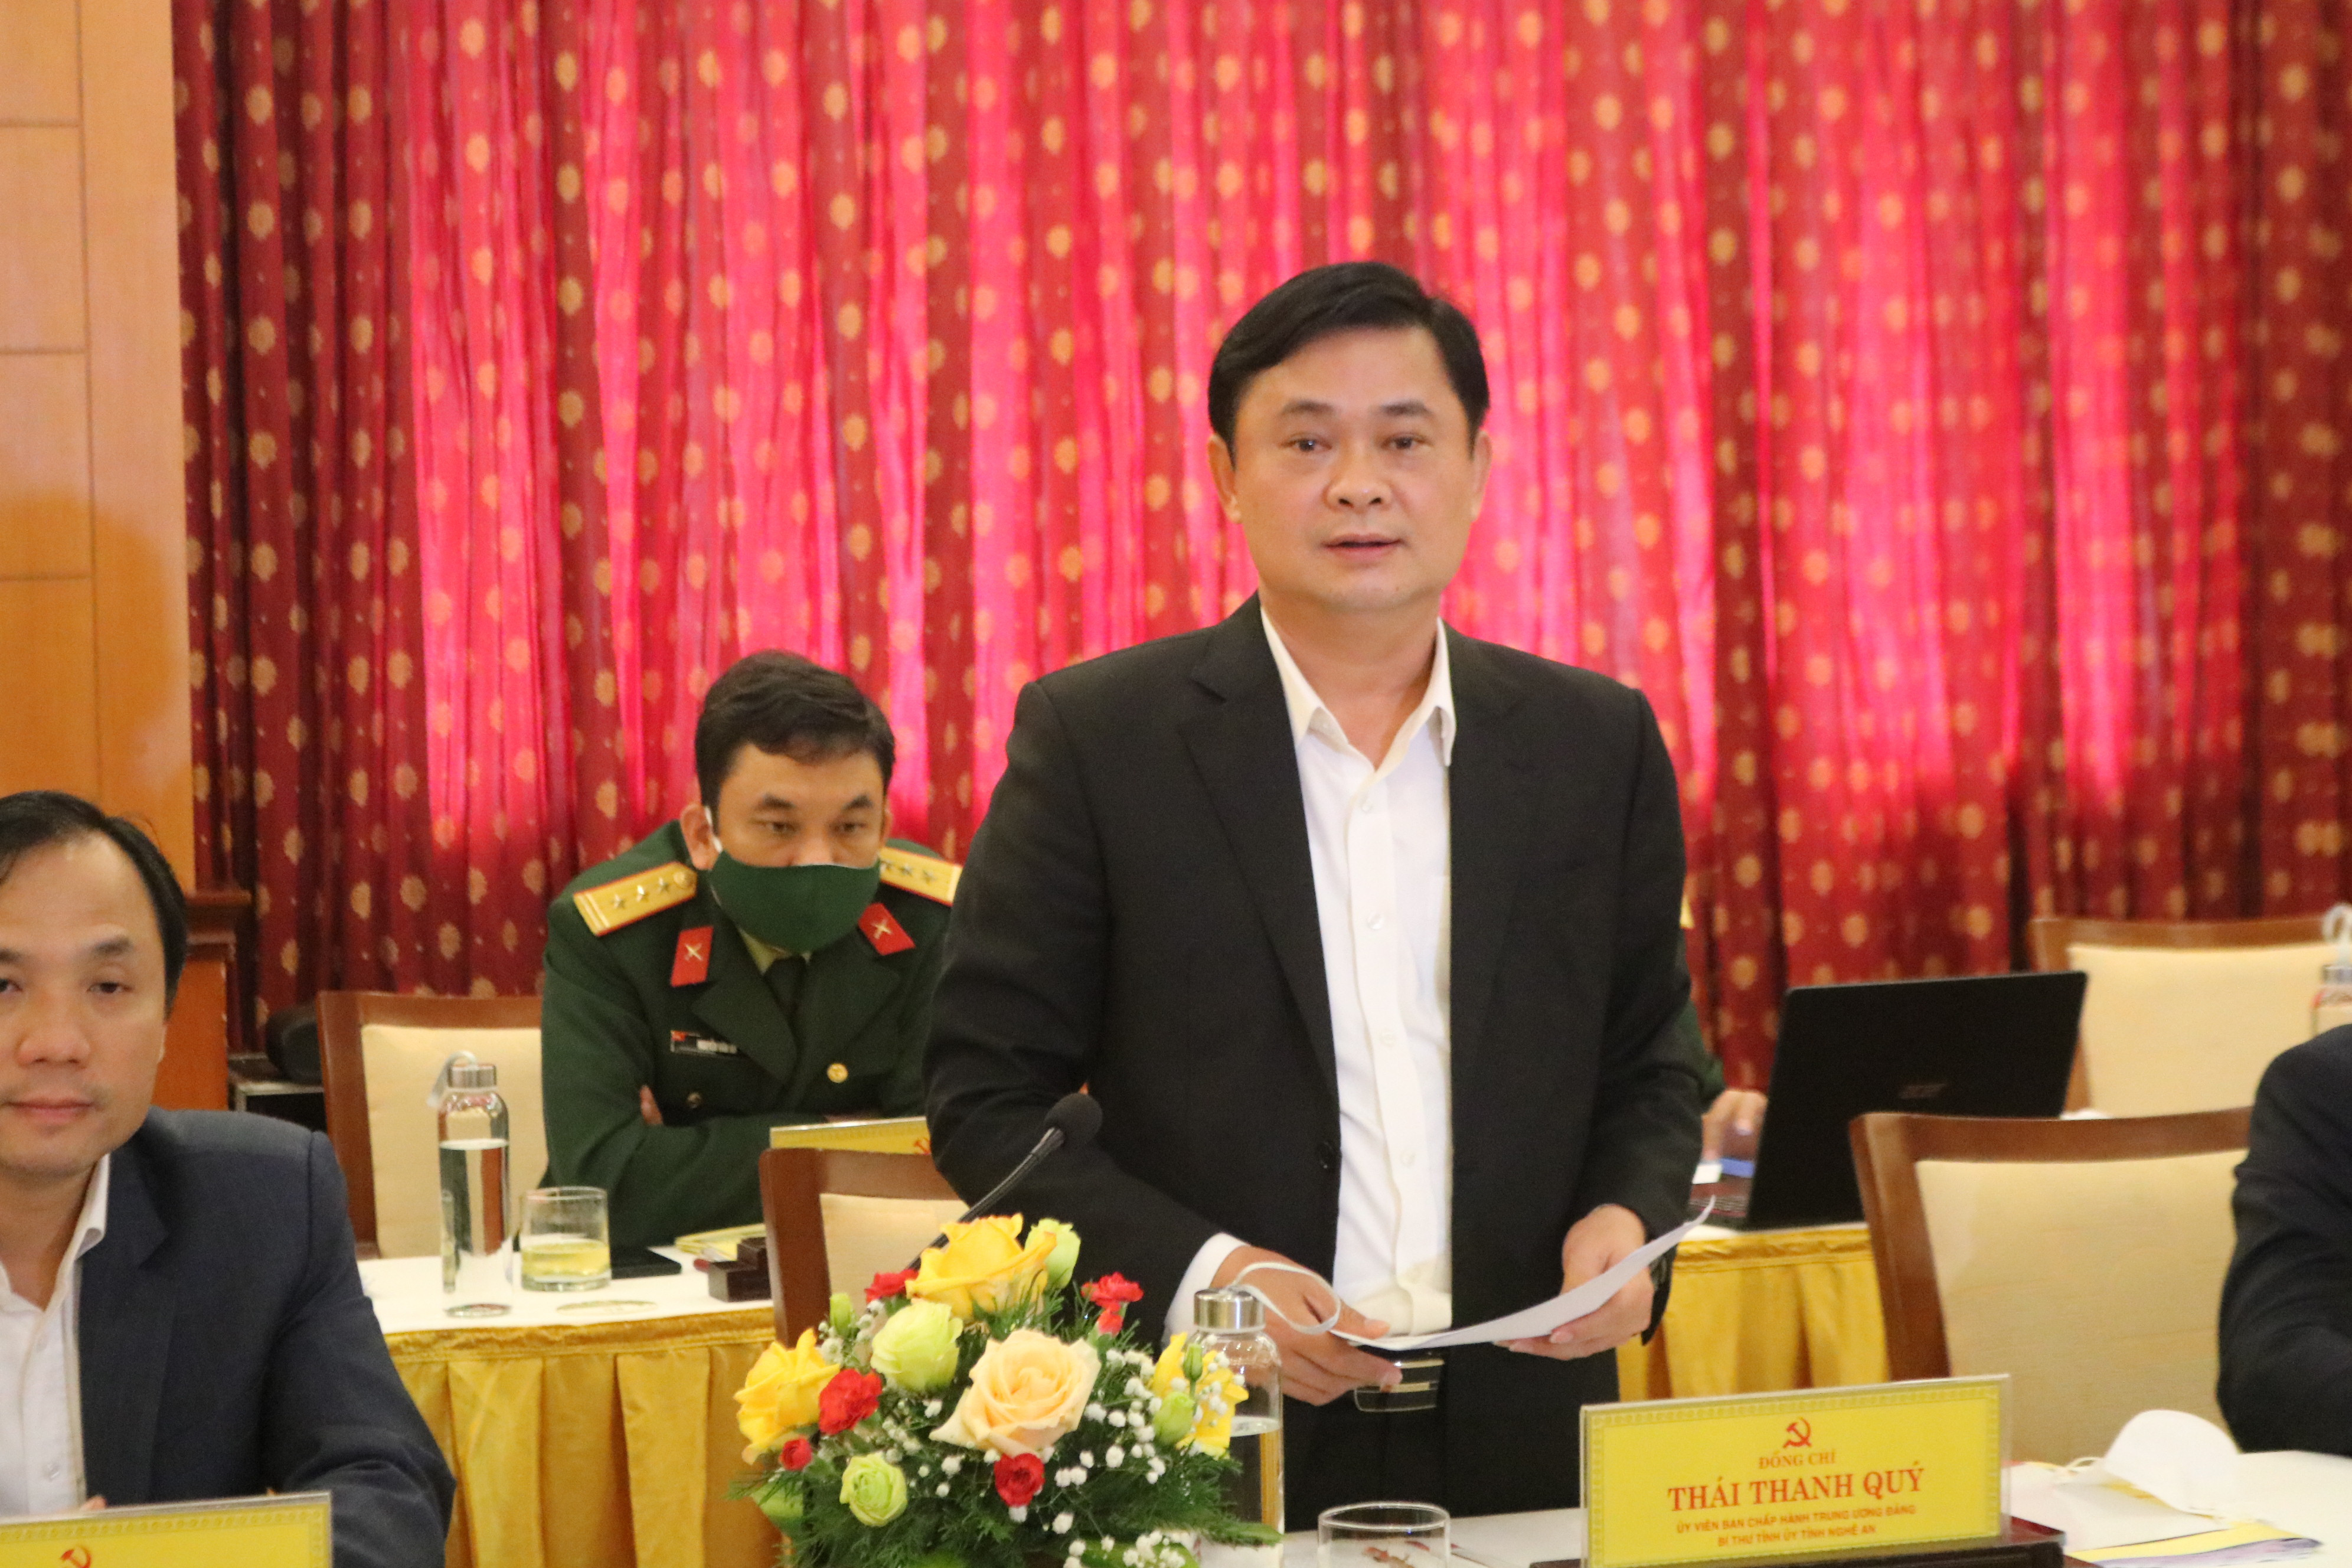 Đồng chí Thái Thanh Quý, Ủy viên Ban Chấp hành Trung ương Đảng, Bí thư Tỉnh ủy, Chủ tịch HĐND tỉnh Nghệ An phát biểu tại hội nghị